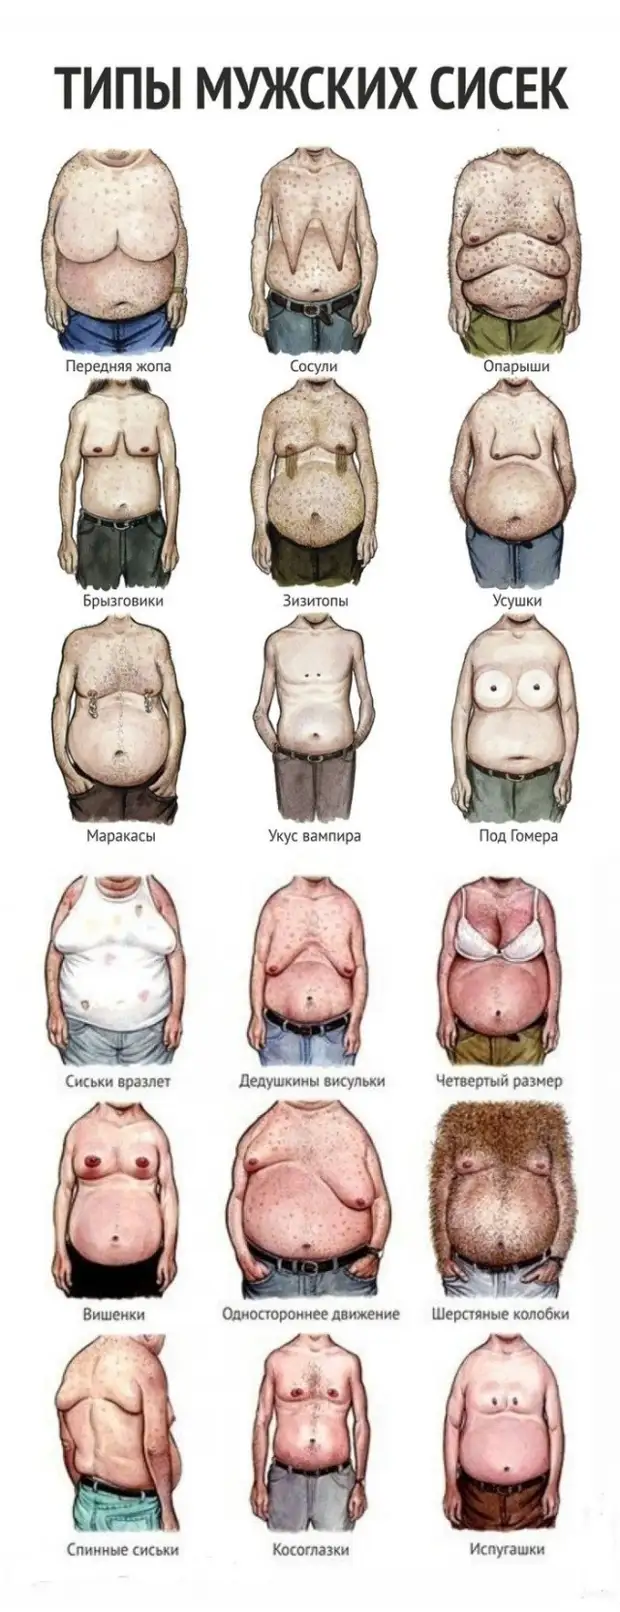 разновидности форм груди женщин фото 9